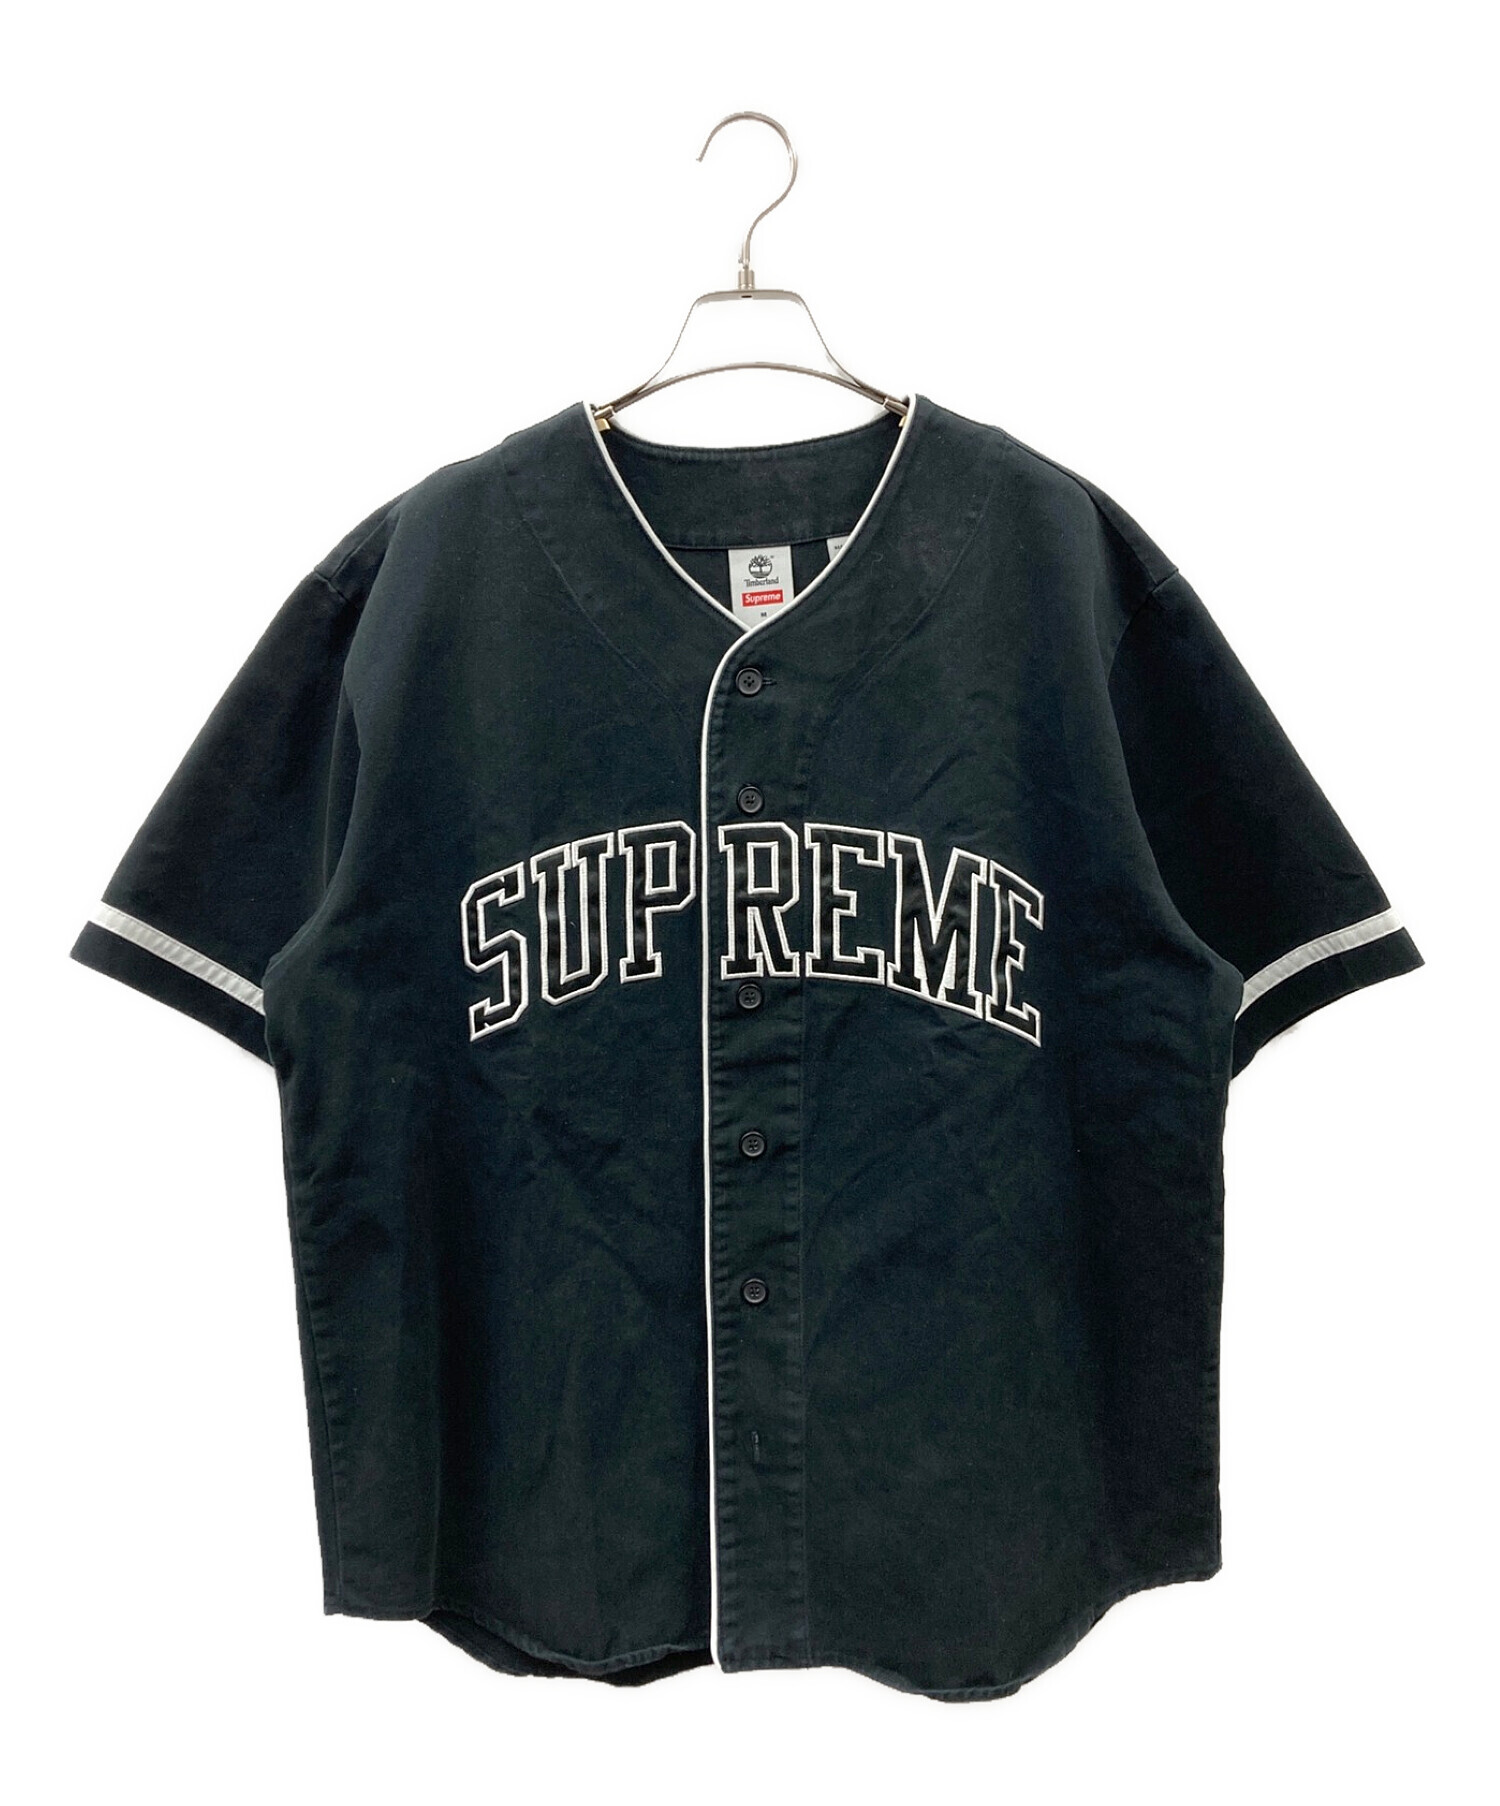 SUPREME (シュプリーム) Timberland (ティンバーランド) Baseball Jersey ブラック サイズ:M